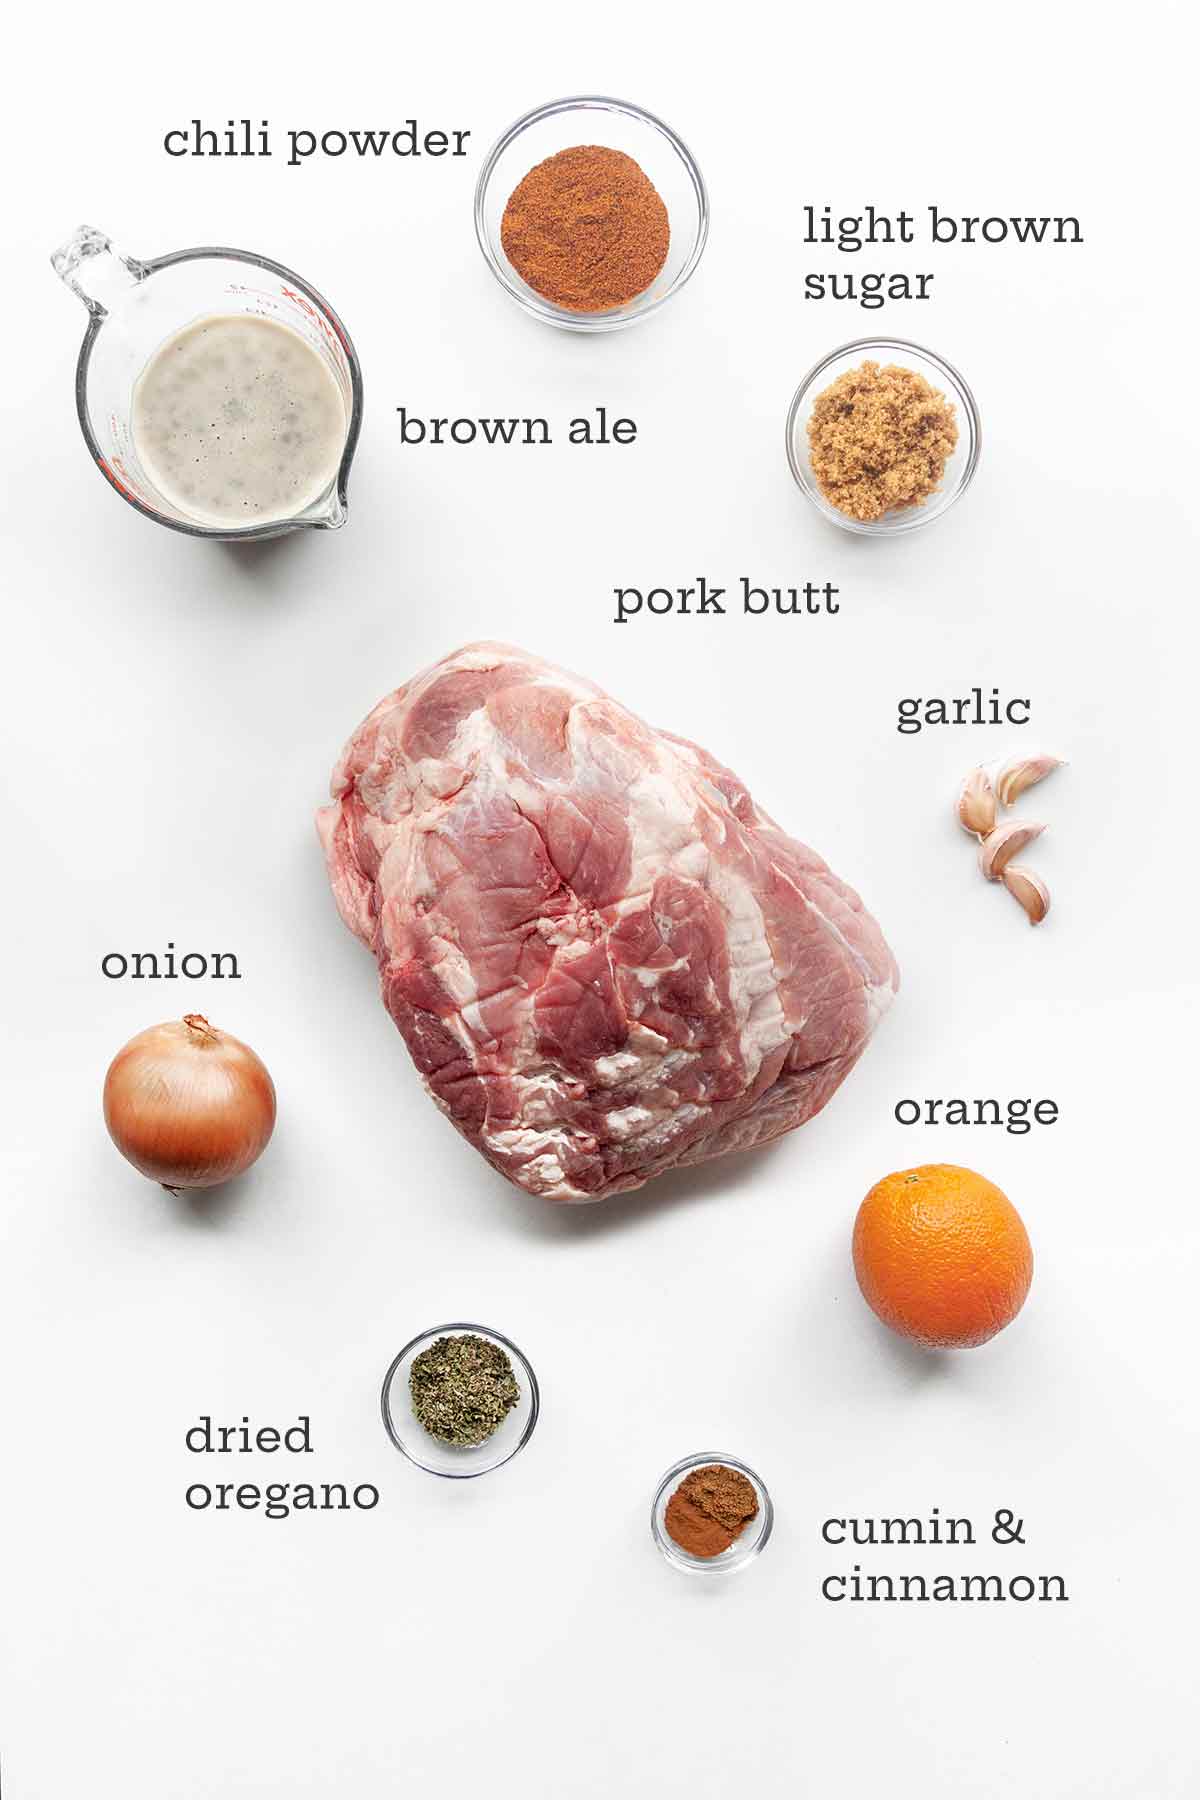 Die Zutaten für Schweinefleisch-Tacos – Schweinefleisch, Knoblauch, Zucker, Gewürze, Zwiebeln, Orangen und Ale.